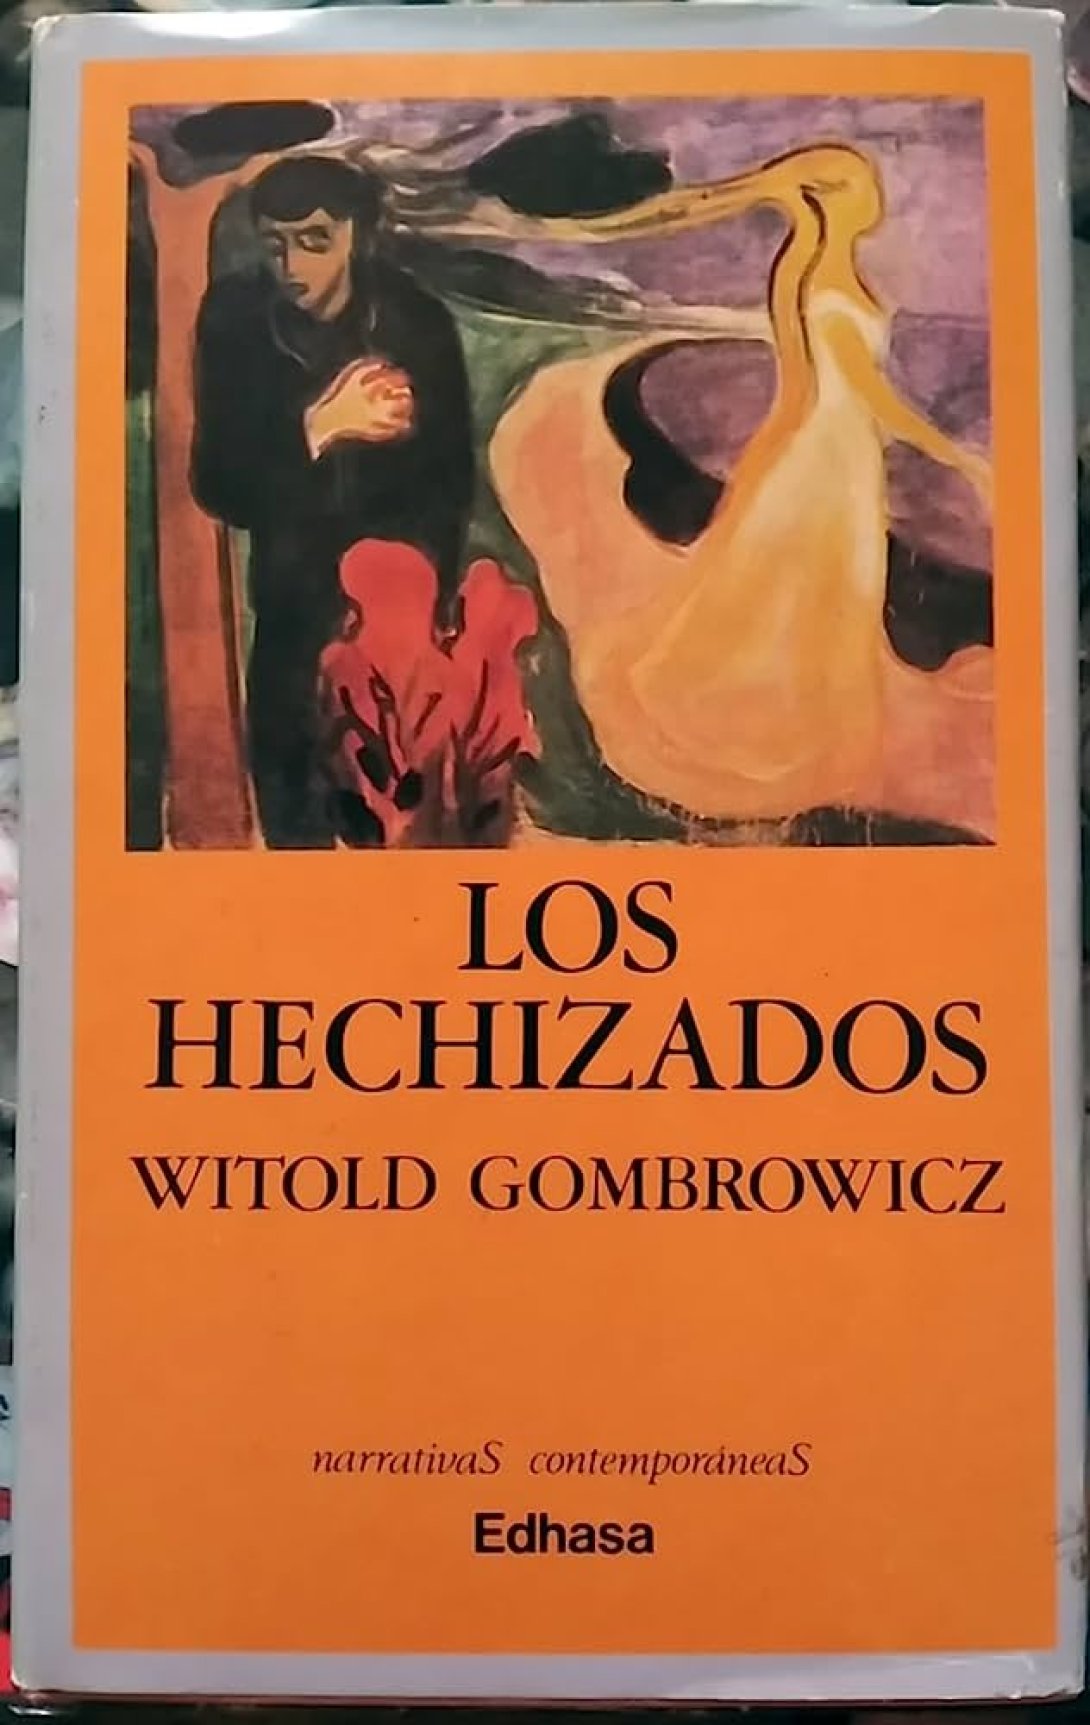 Portada de "Los Hechizados", de Witold Gombrowitcz